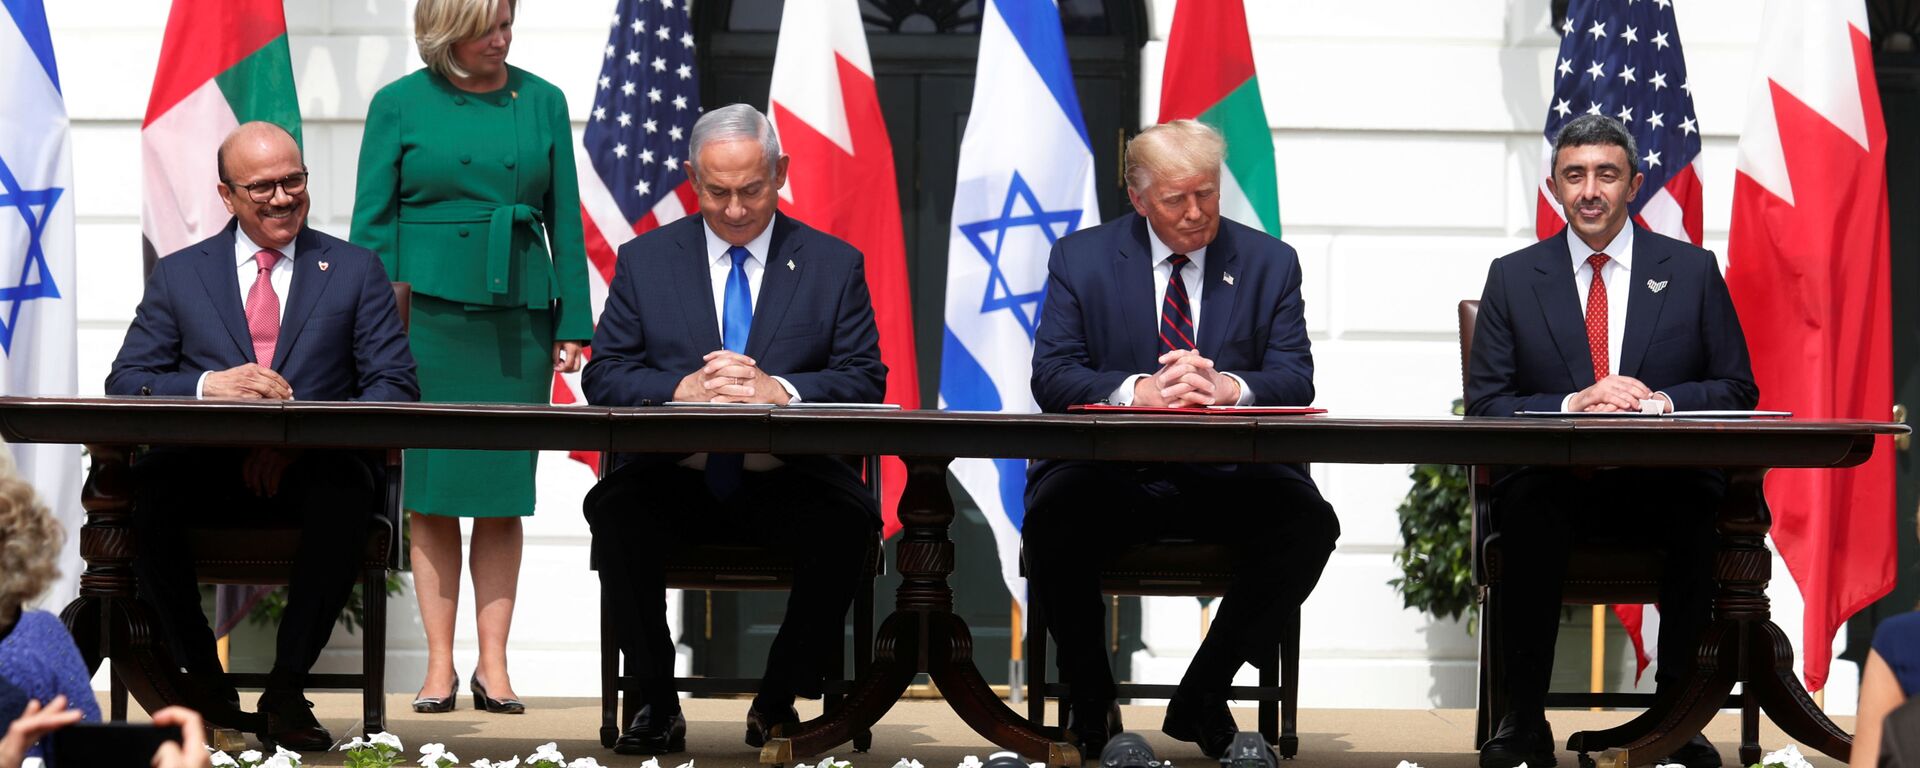 Em Washington, (da esquerda para a direita) o chanceler do Bahrein, Abdullatif al-Zayani, o premiê de Israel, Benjamin Netanyahu, o presidente dos Estados Unidos, Donald Trump, e o chanceler dos Emirados Árabes Unidos (EAU), Abdullah bin Zayed, durante cerimônia de assinatura dos acordos de Abraão, tratados de paz mediados pelos EUA e assinados entre Israel, Bahrein e EAU, em 15 de setembro de 2020. - Sputnik Brasil, 1920, 15.09.2020